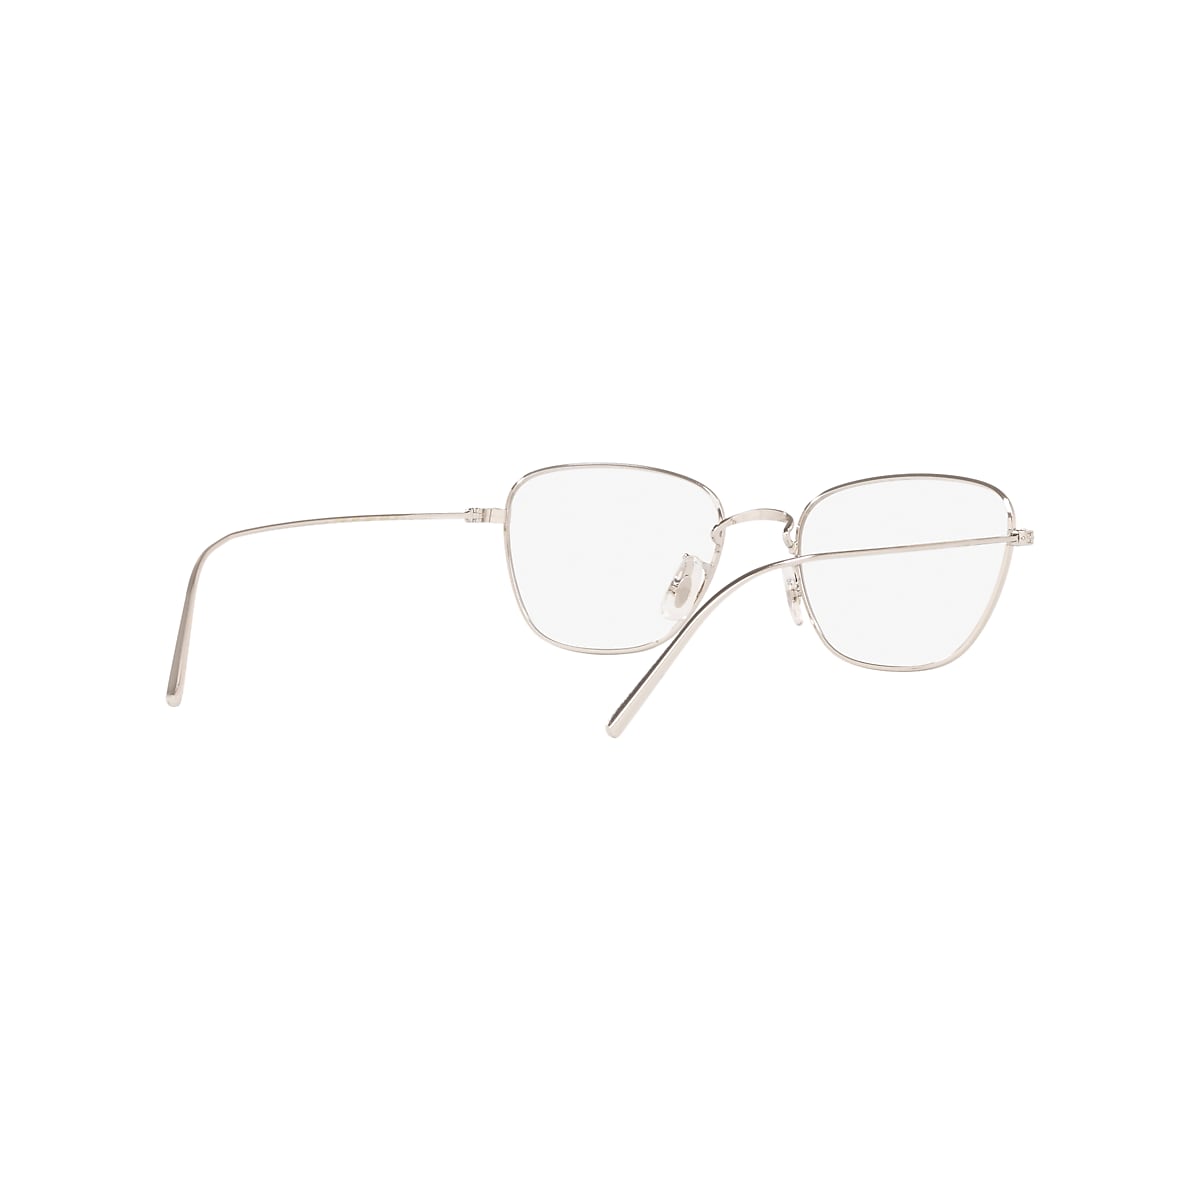 OV1254 Eyeglasses Silver | Oliver Peoples USA